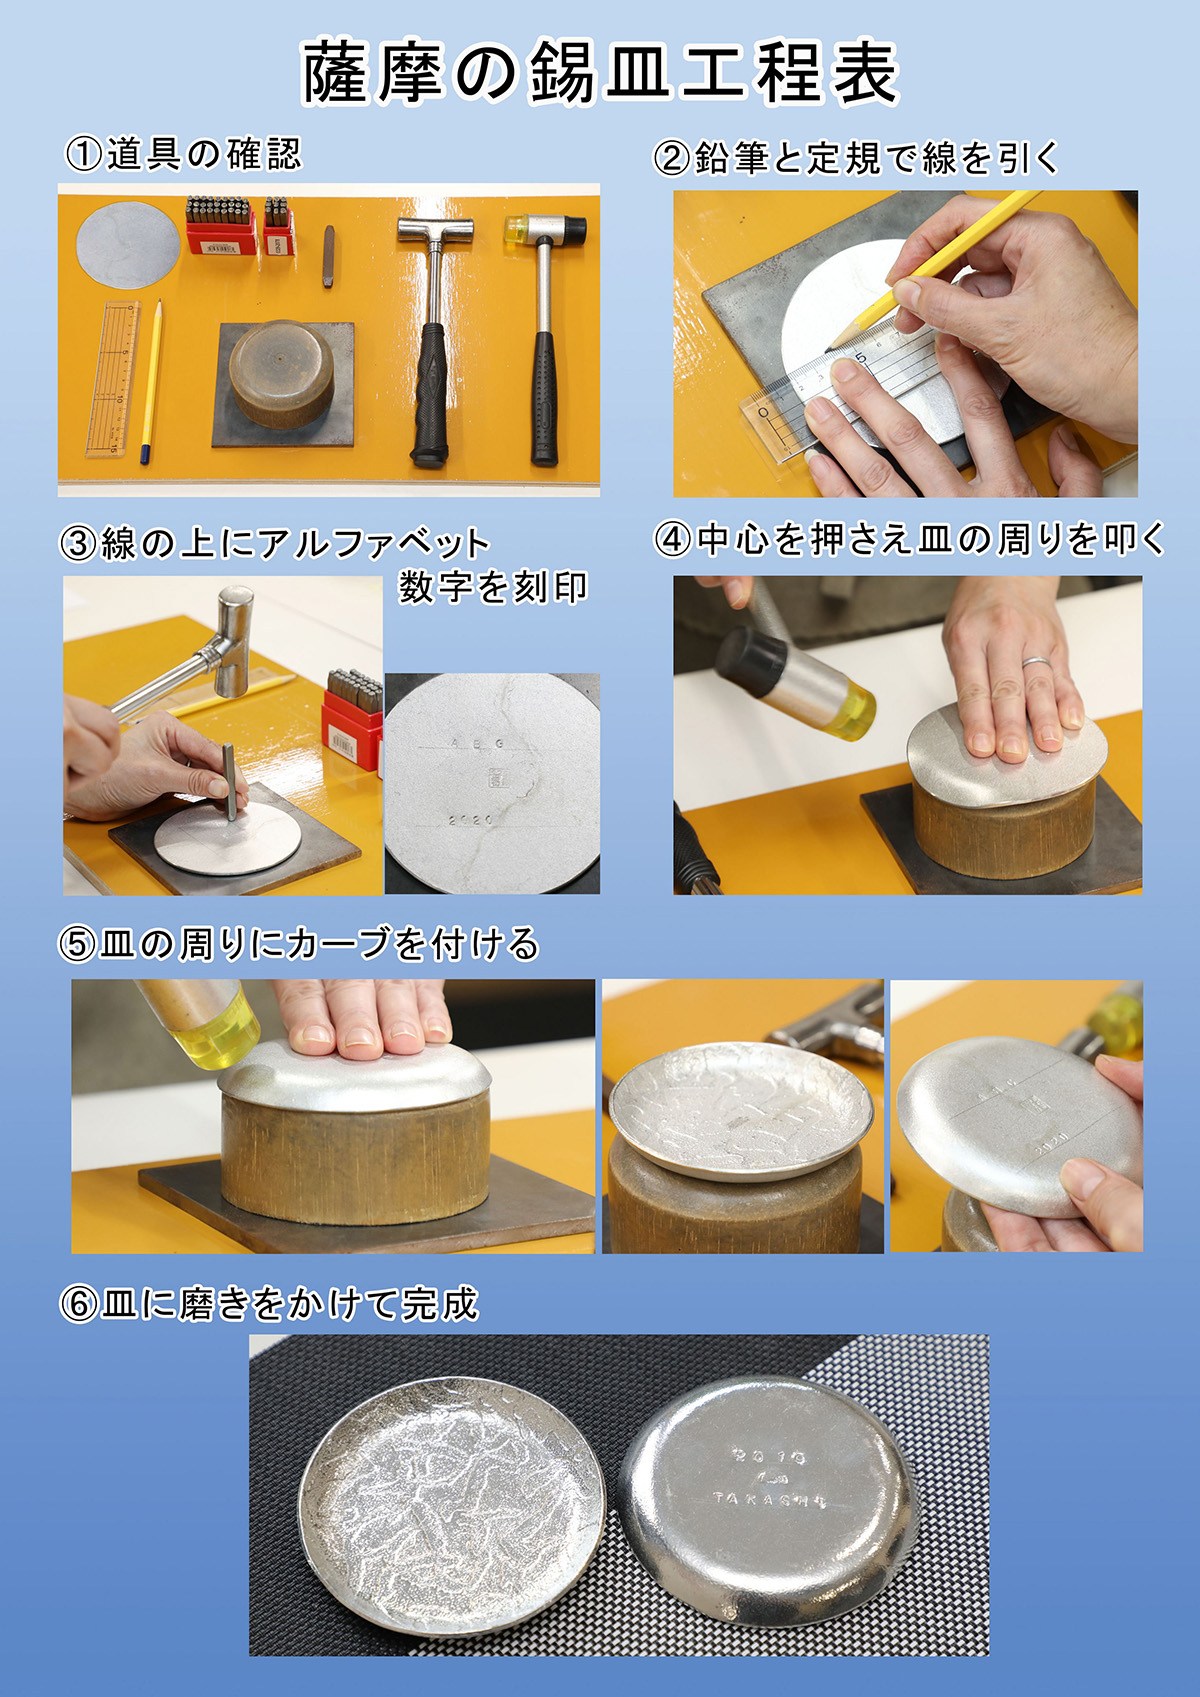 A0-289 薩摩錫器 錫皿制作体験(1名様)【岩切美巧堂】